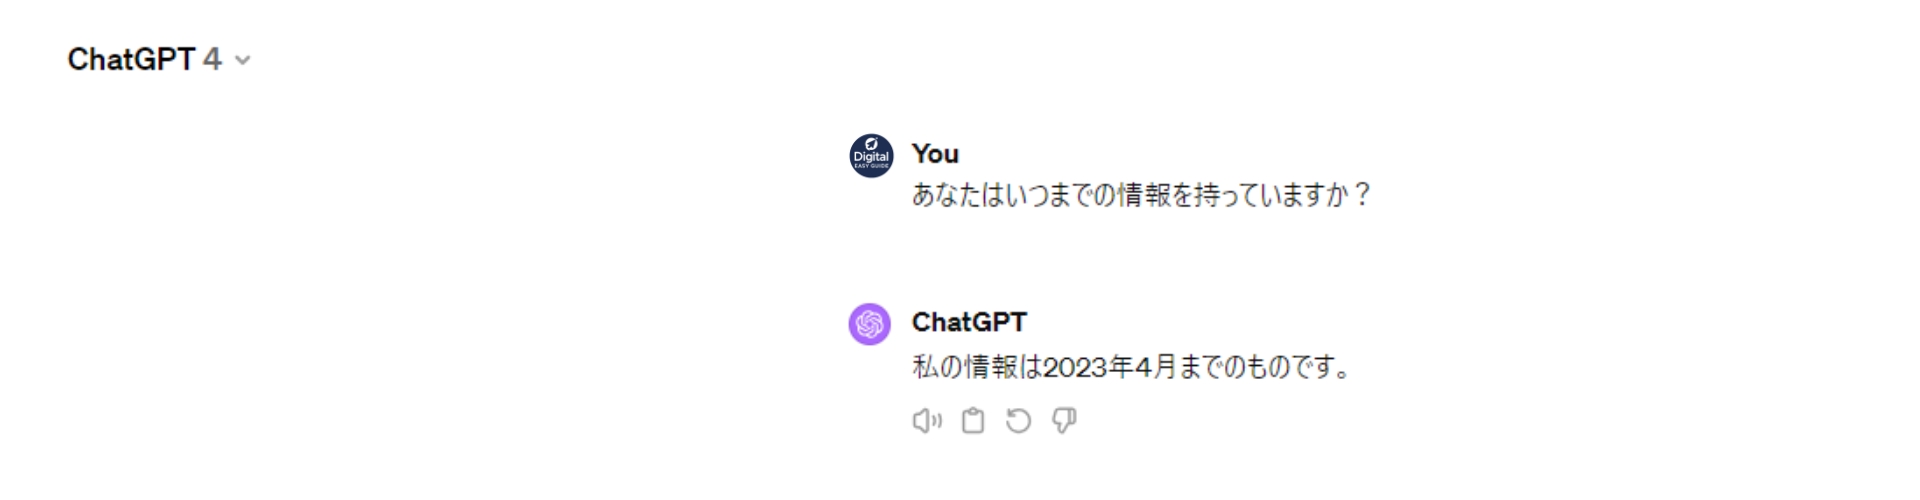 ChatGPT4はいつまでの情報を持っているか